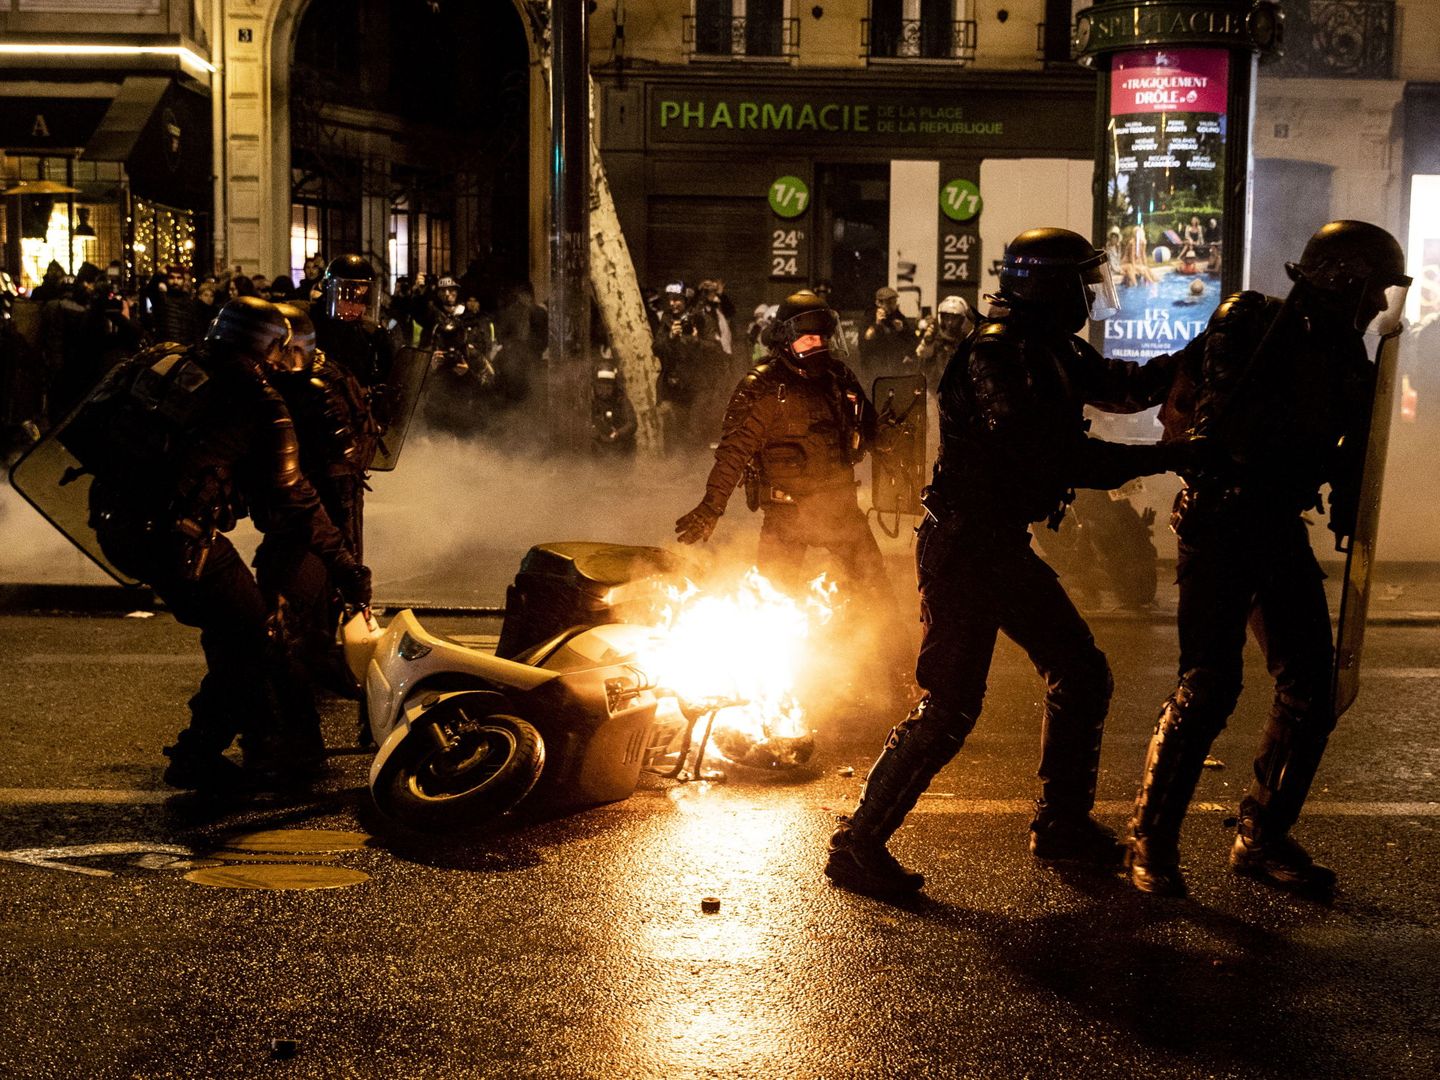 Agentes de policía retiran una moto en llamas durante los disturbios en los Campos Elíseos de París, el 26 de enero de 2019. (EFE)